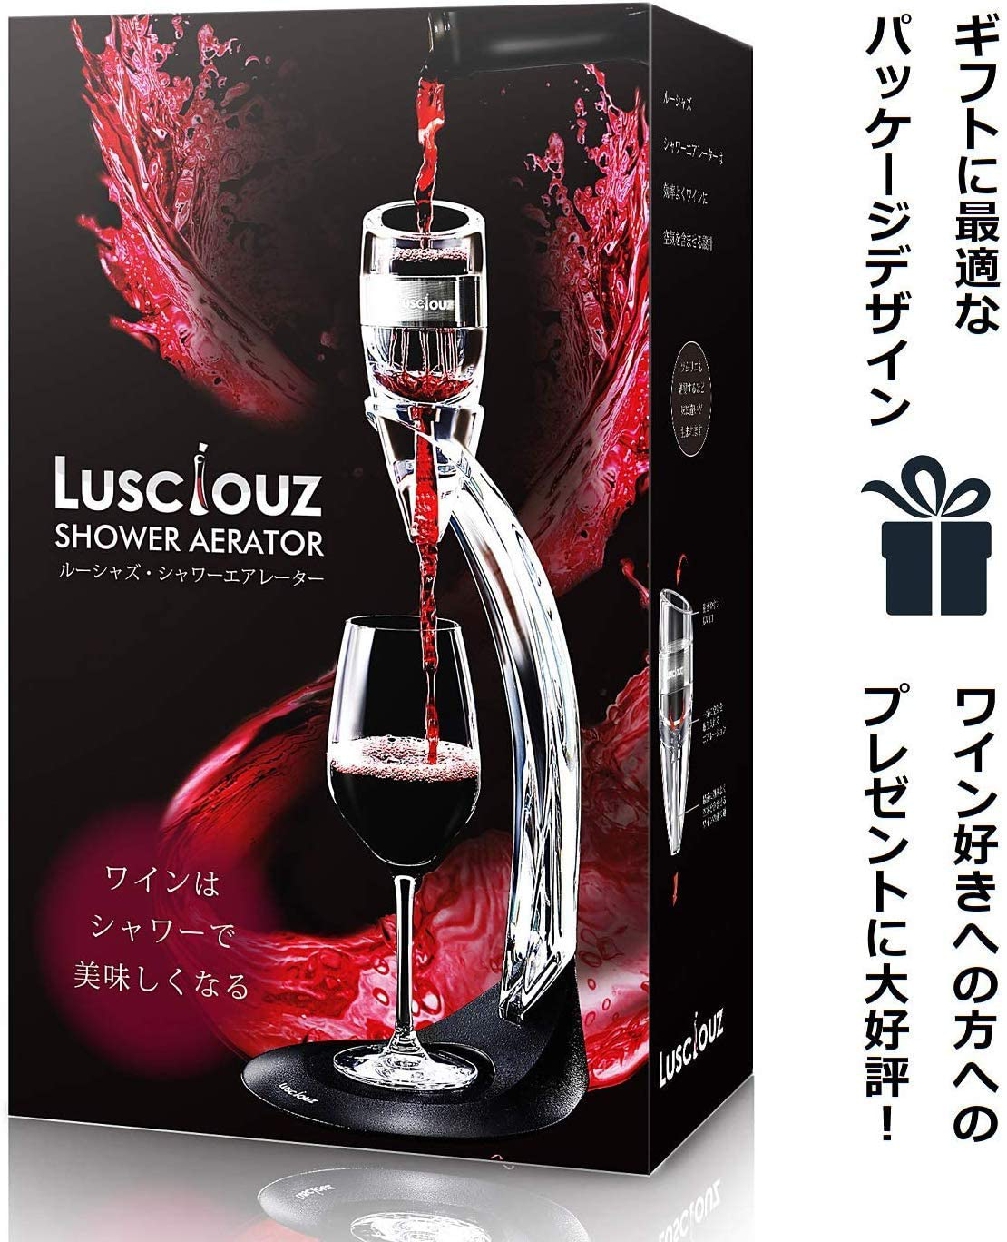 Lusciouz(ルーシャズ) シャワーエアレーターの商品画像サムネ8 